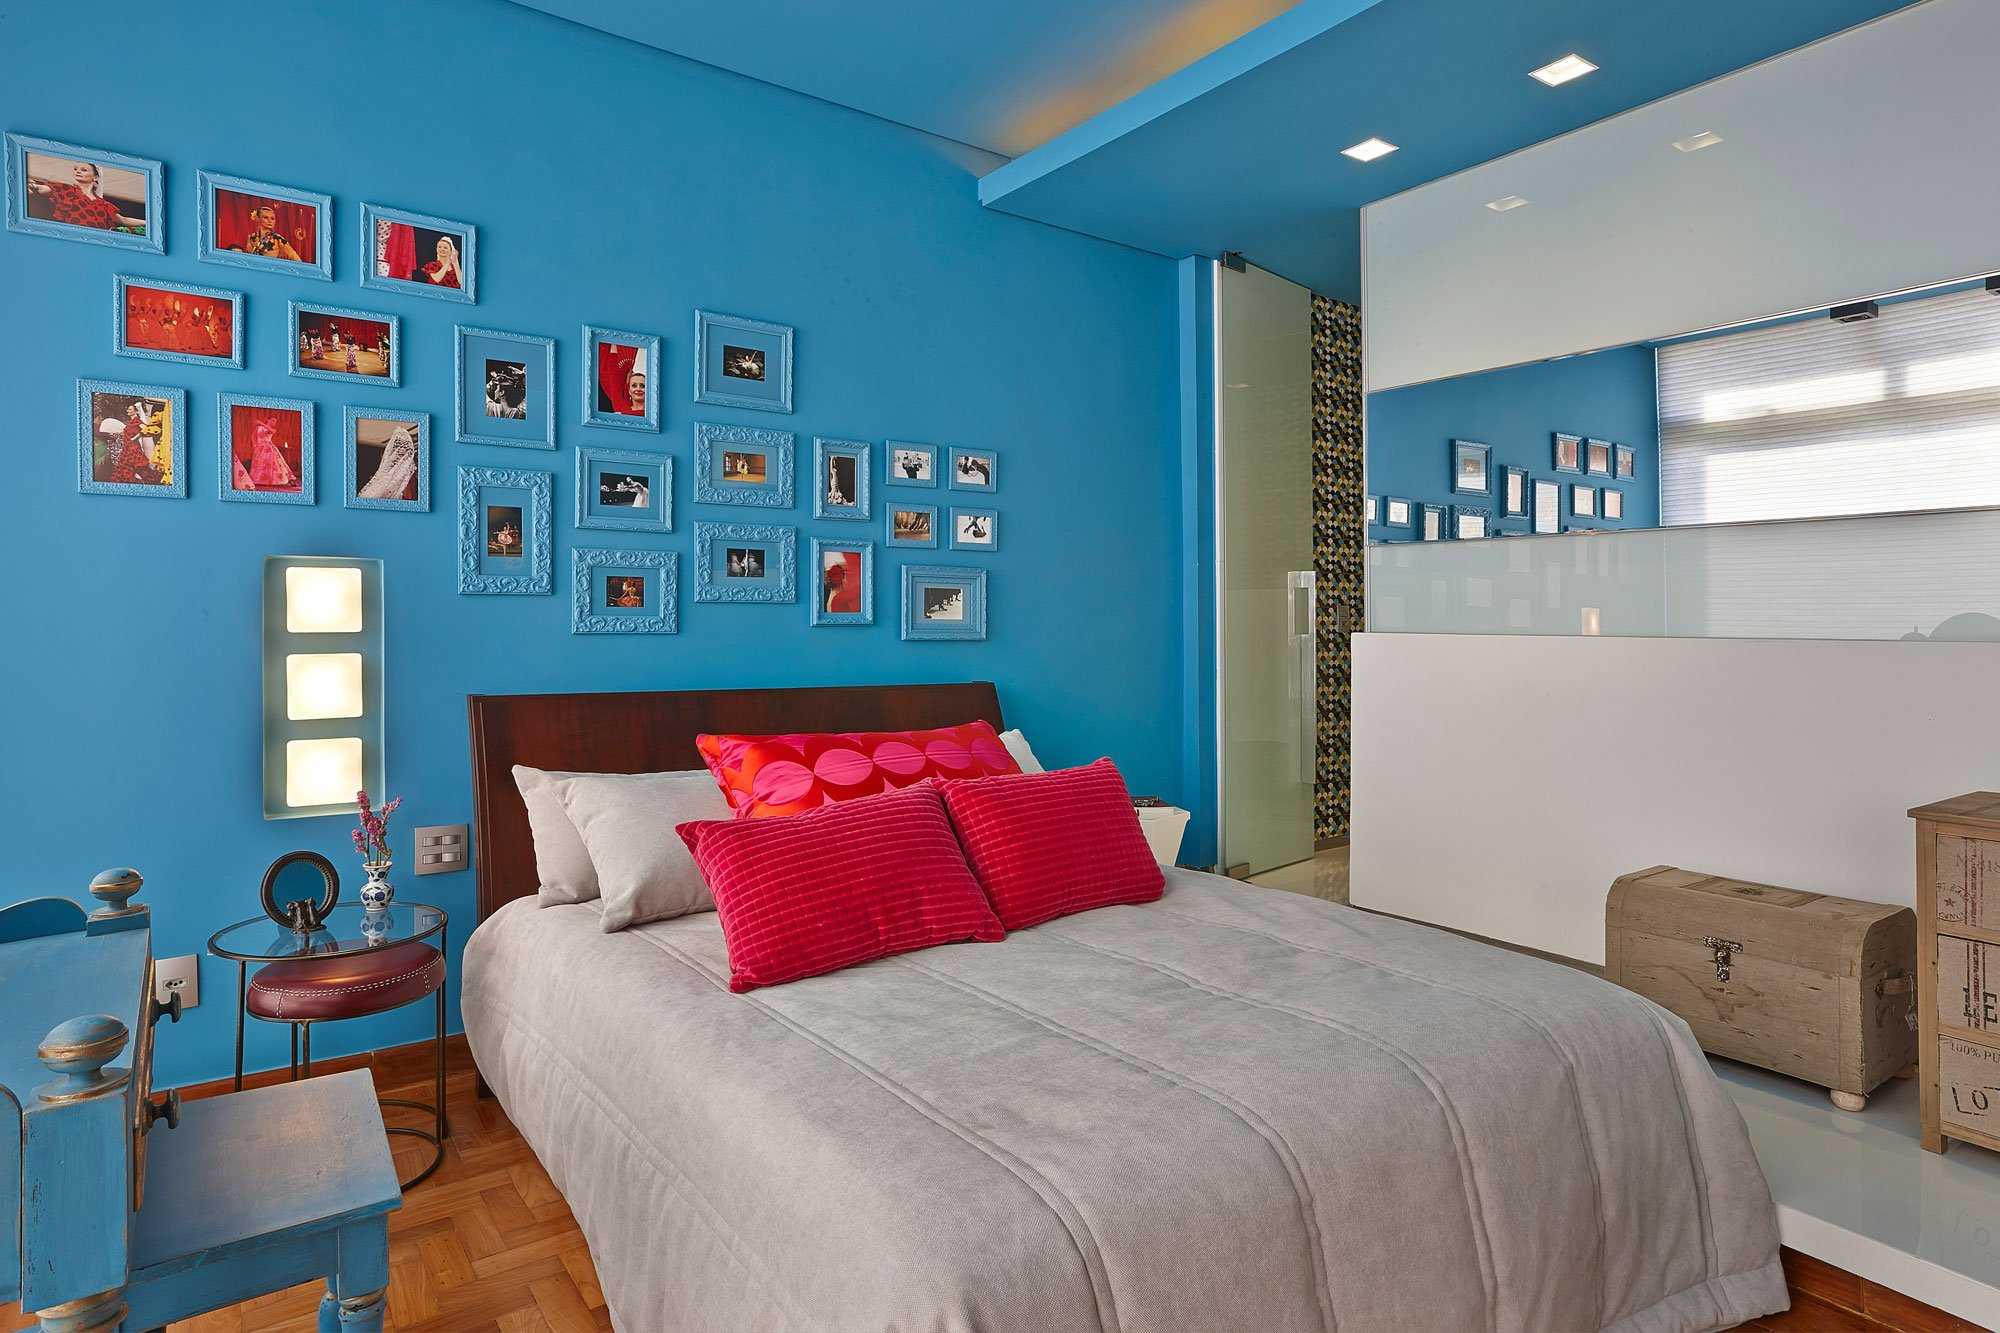 Стены под покраску в интерьере (63 фото): окрашенные стены в дизайне квартиры и дома, дизайнерские идеи оформления спальни разными цветами